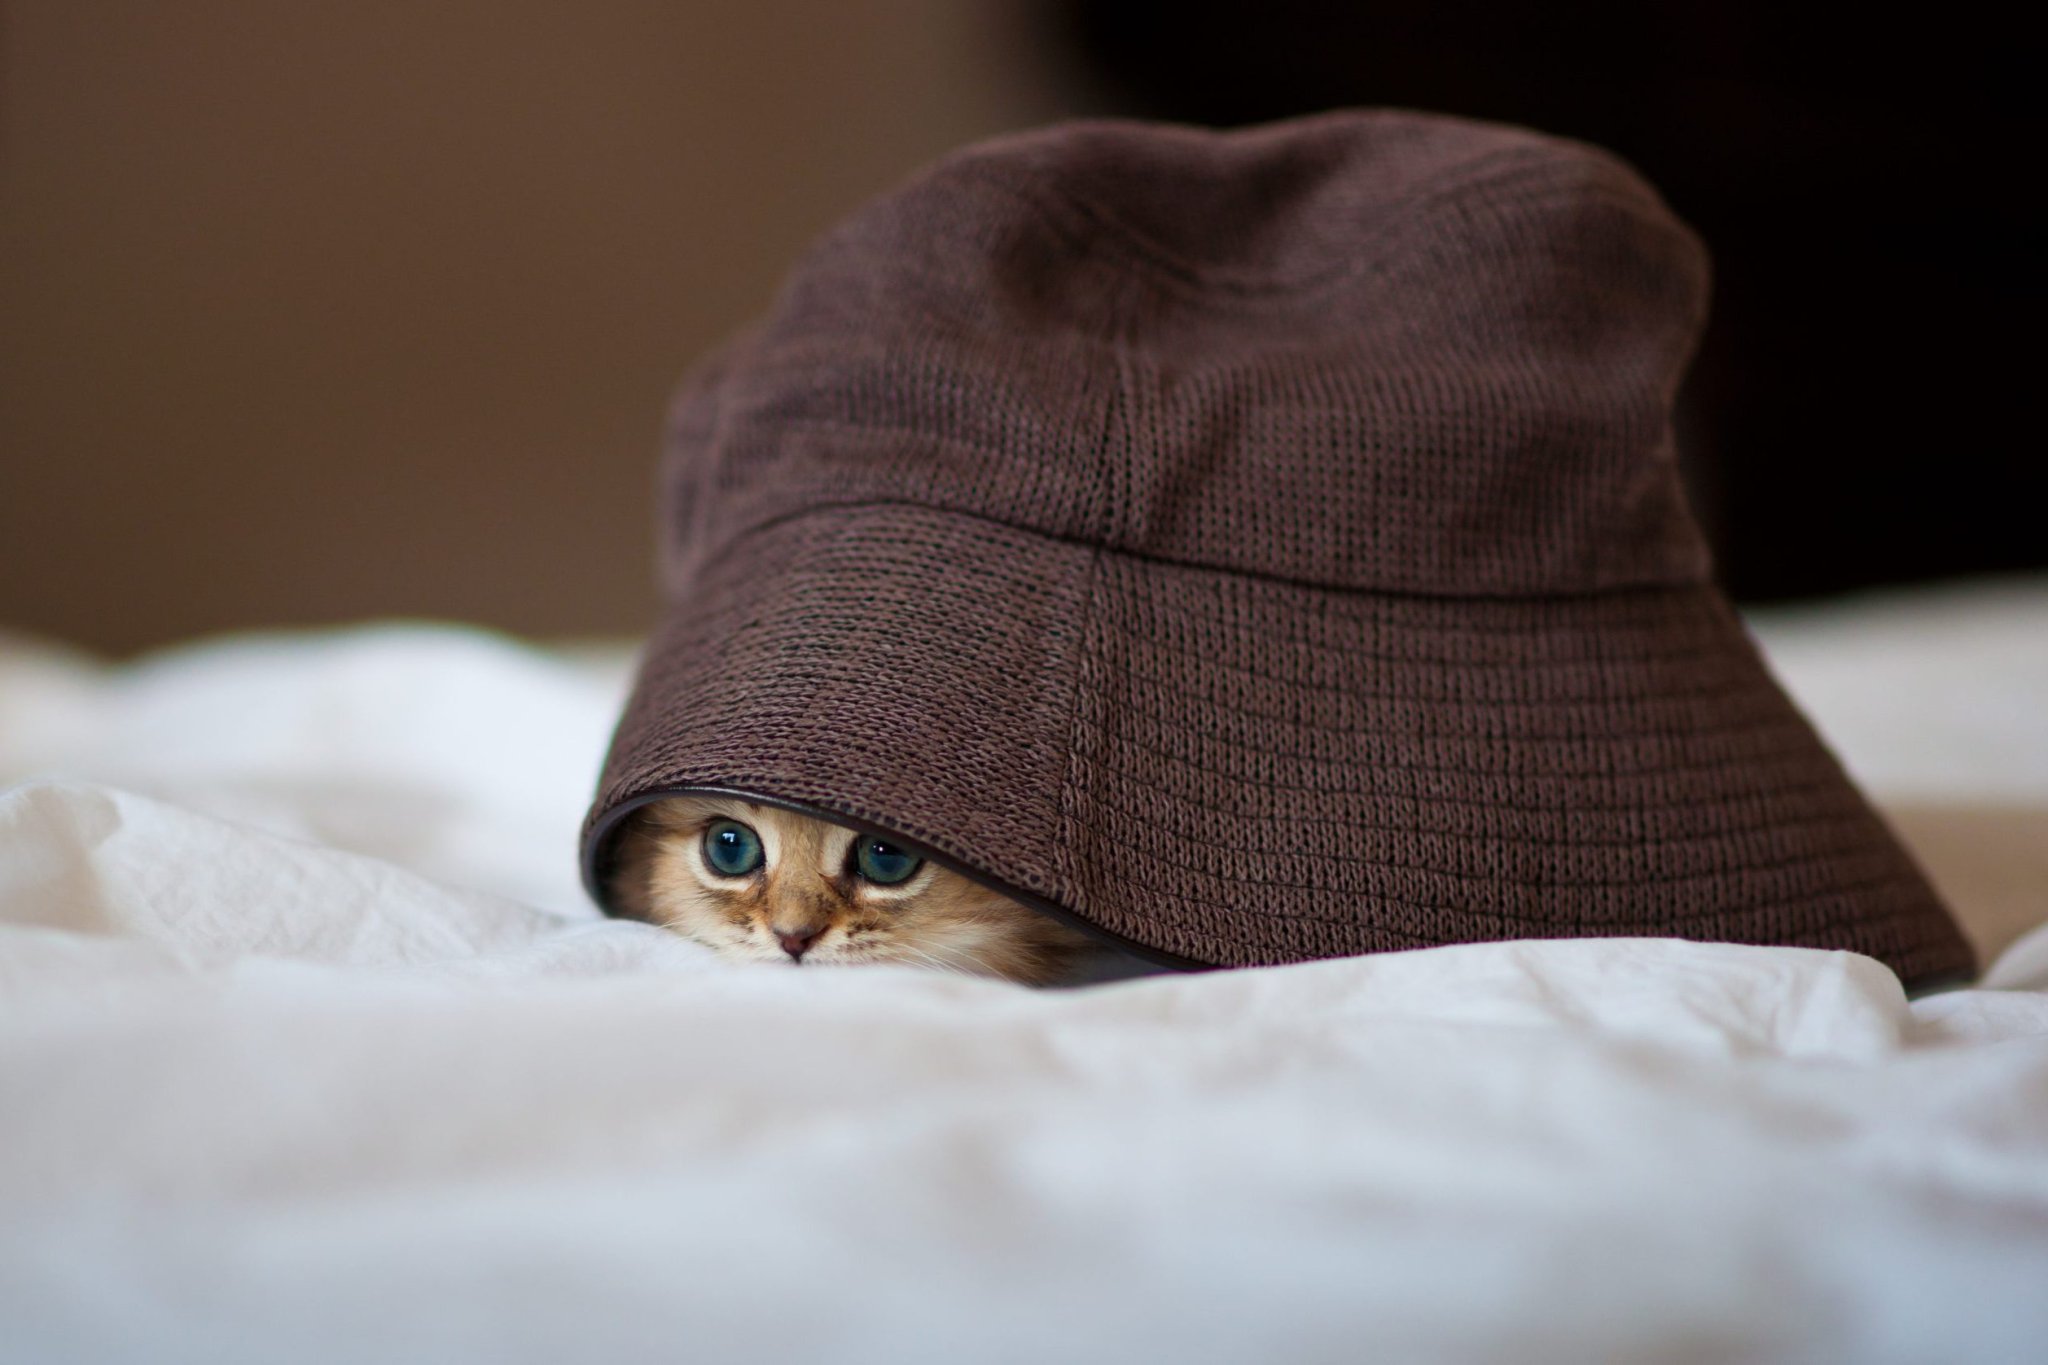 50 Cute Kitten Photos That Will Make You Melt